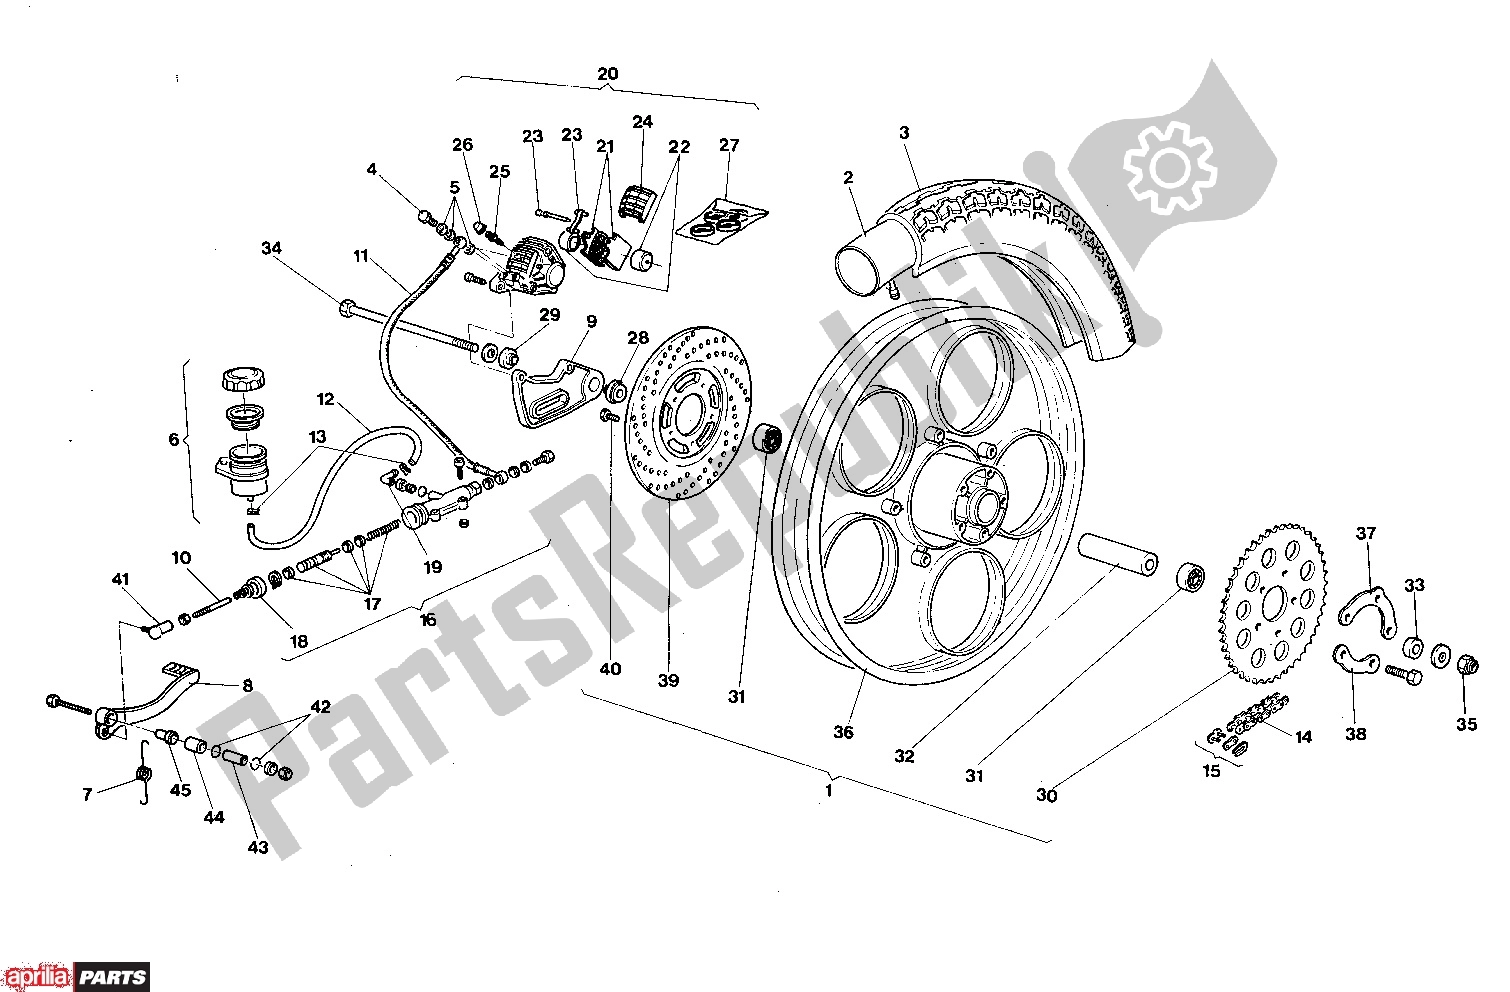 Todas las partes para Rear Wheel Disk Brake de Aprilia AF1 303 50 1986 - 1988